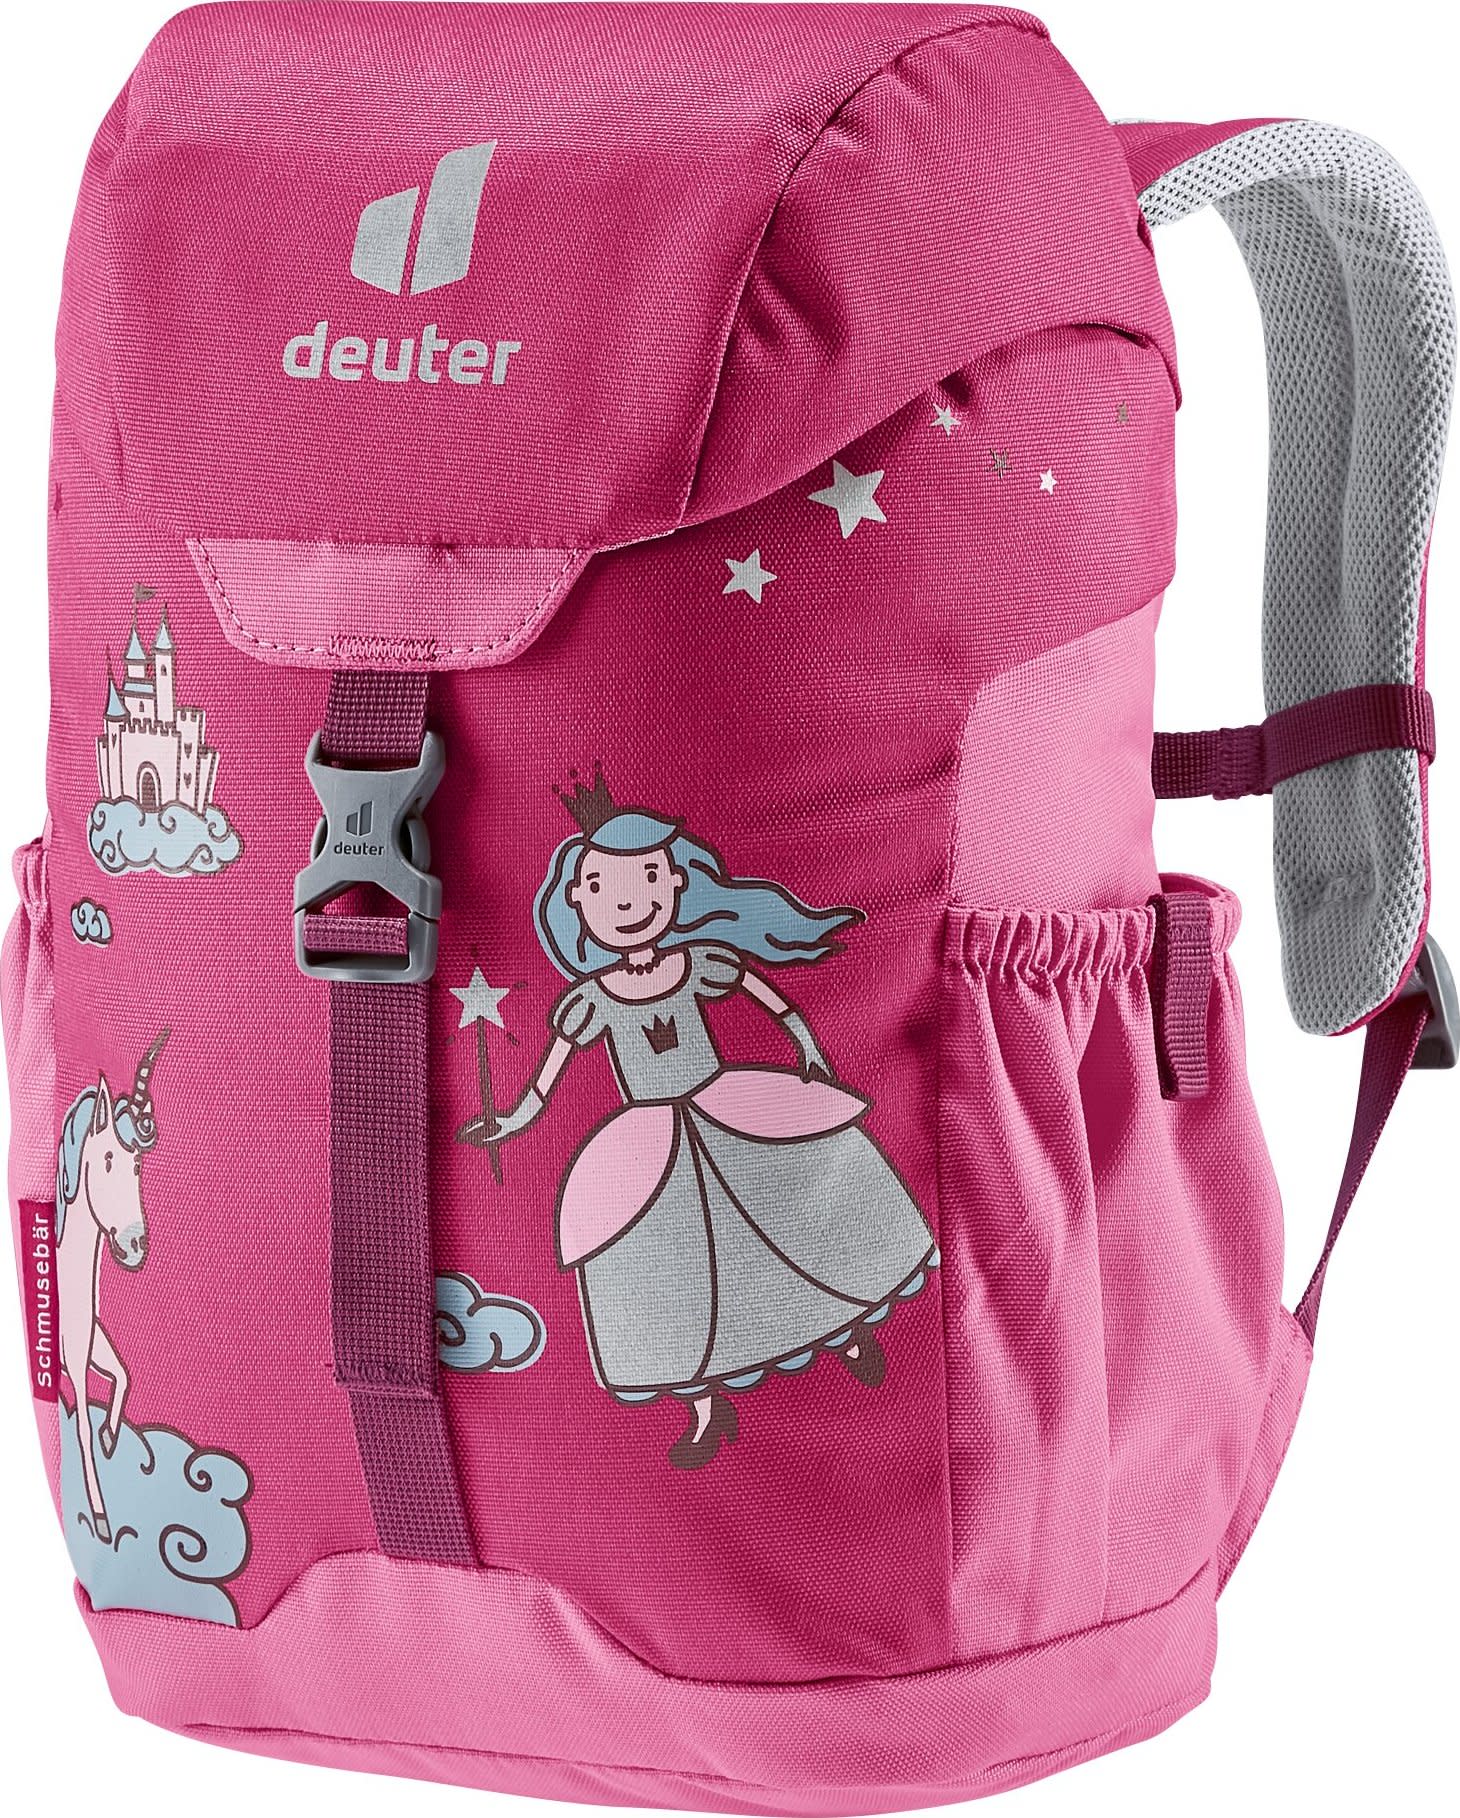 Deuter Kids' Schmusebär Ruby/Hot Pink